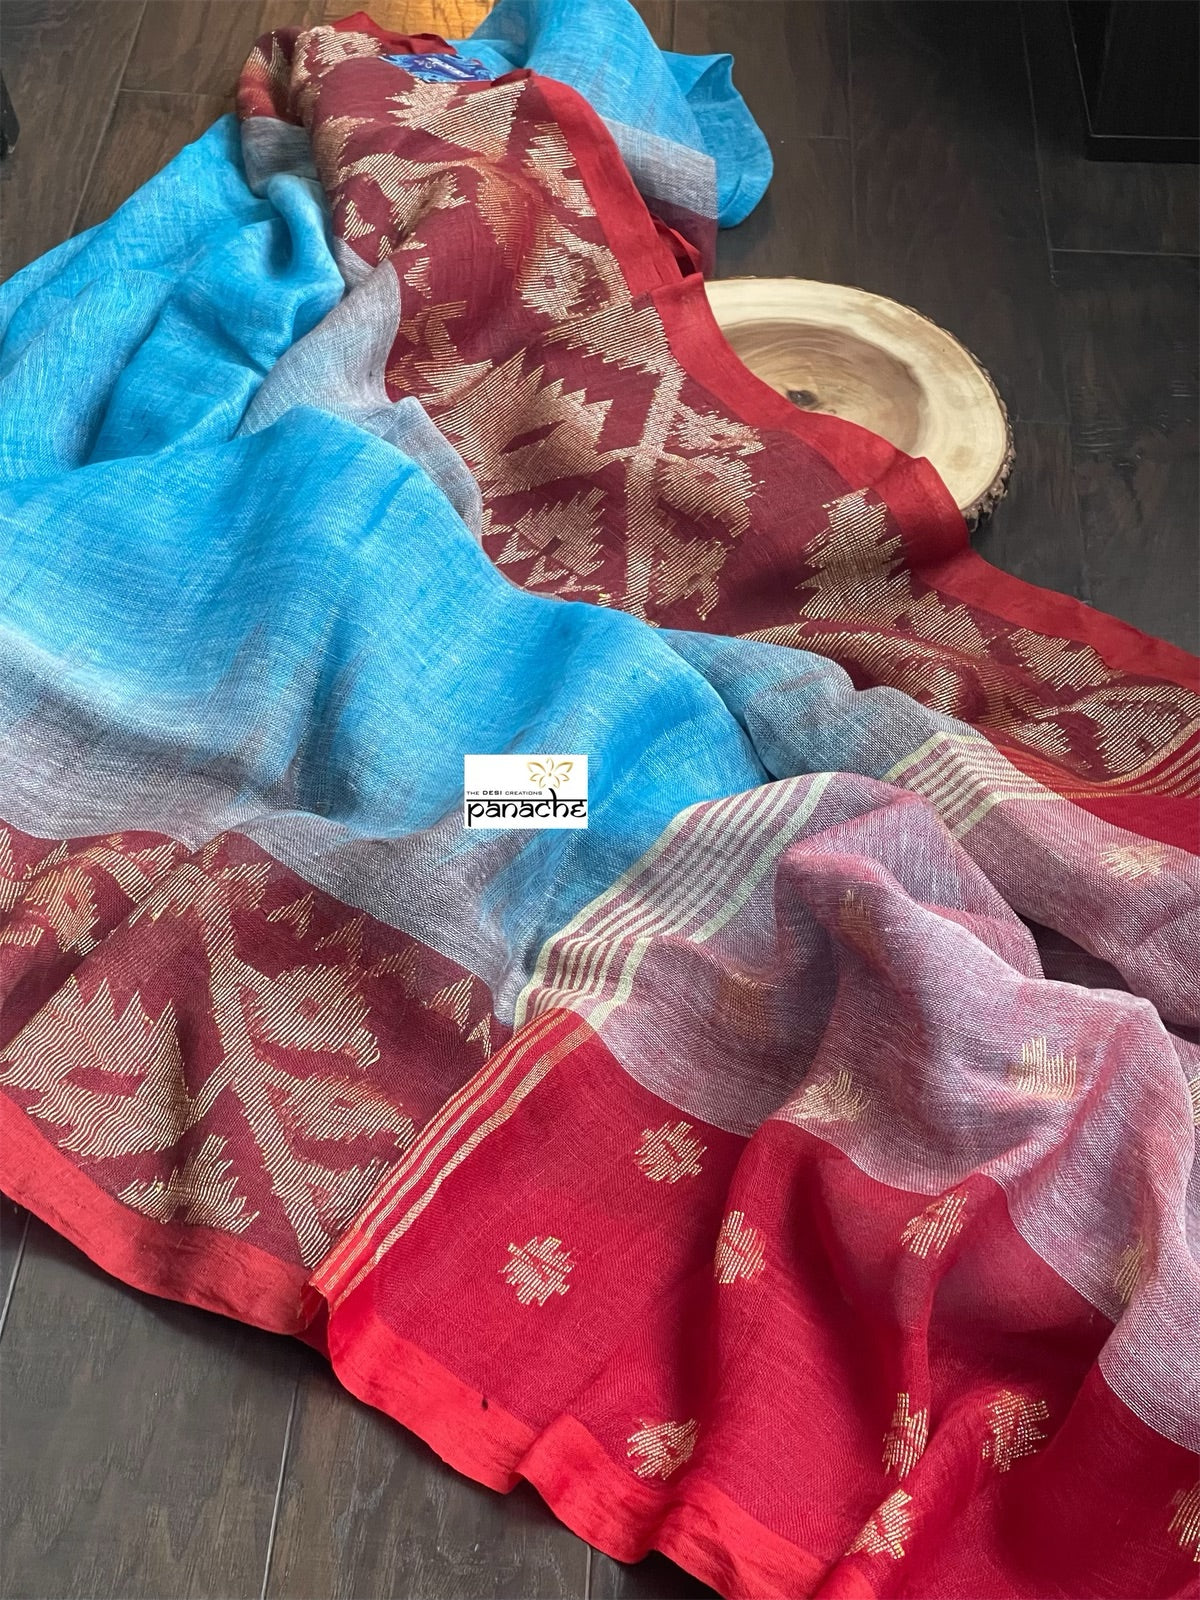 Handloom Banarasi Linen - Firozi Blue Maroon